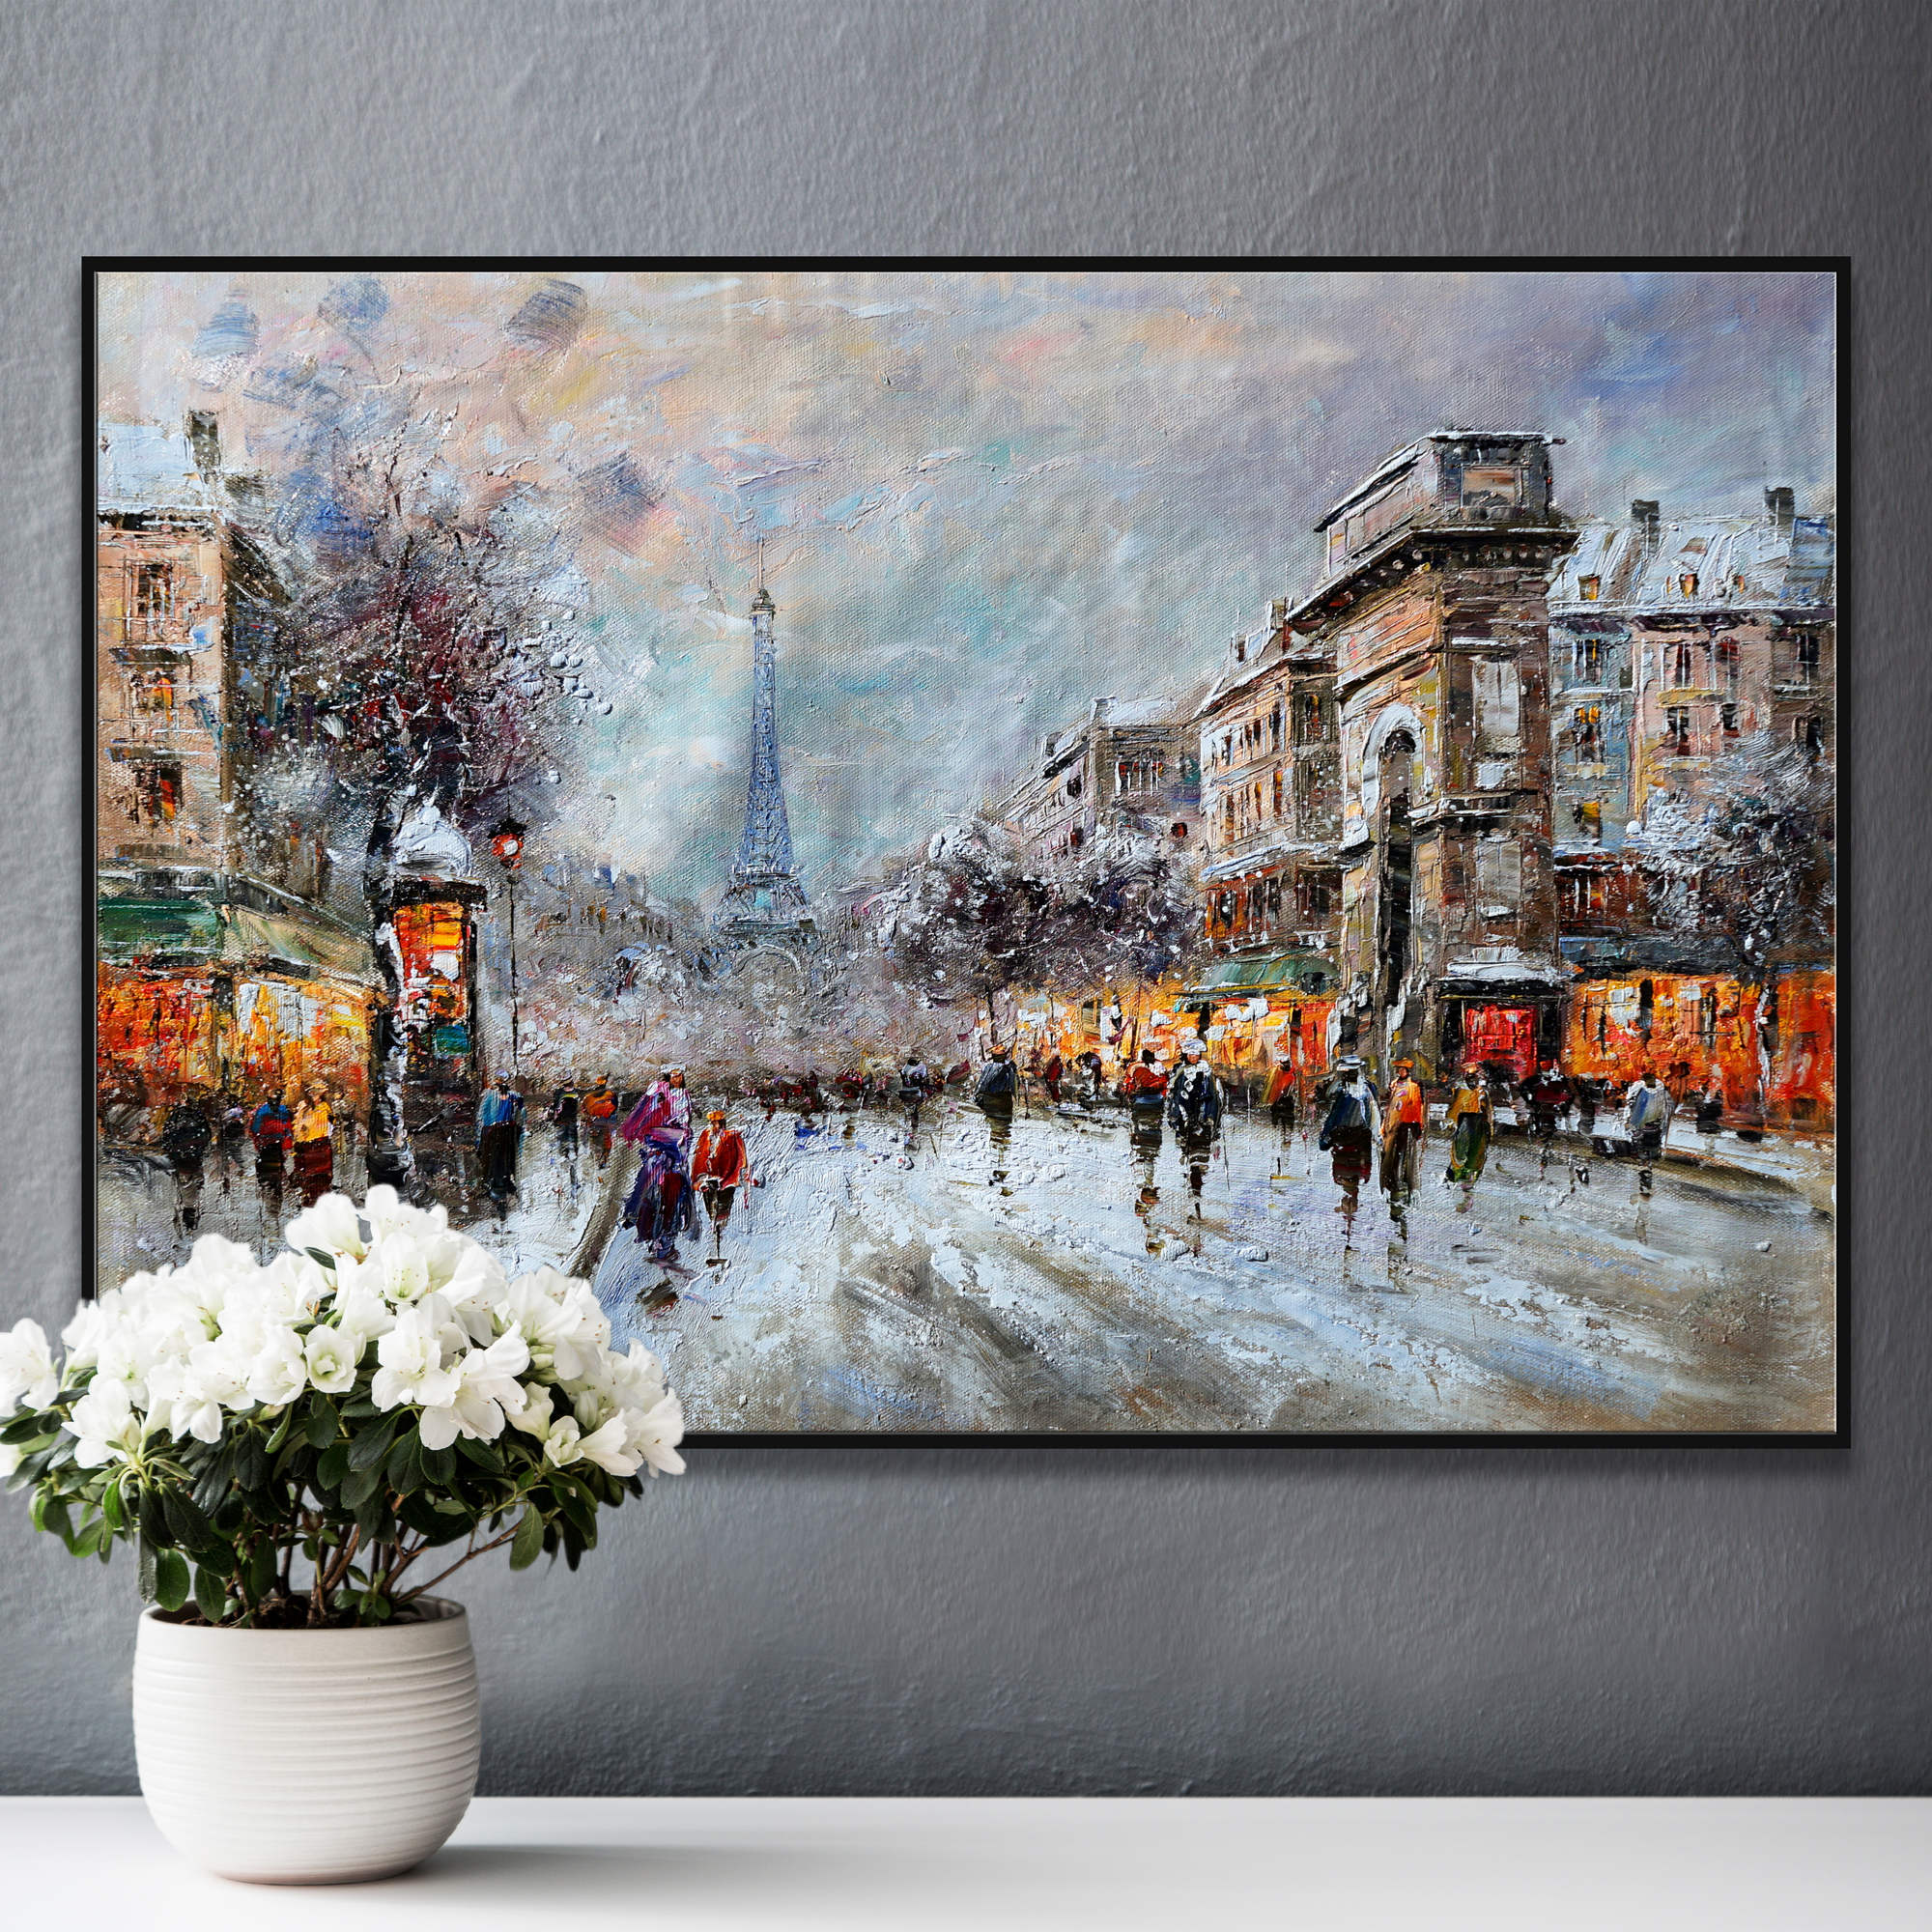 Dipinto di una strada innevata a Parigi con persone e la Torre Eiffel in lontananza